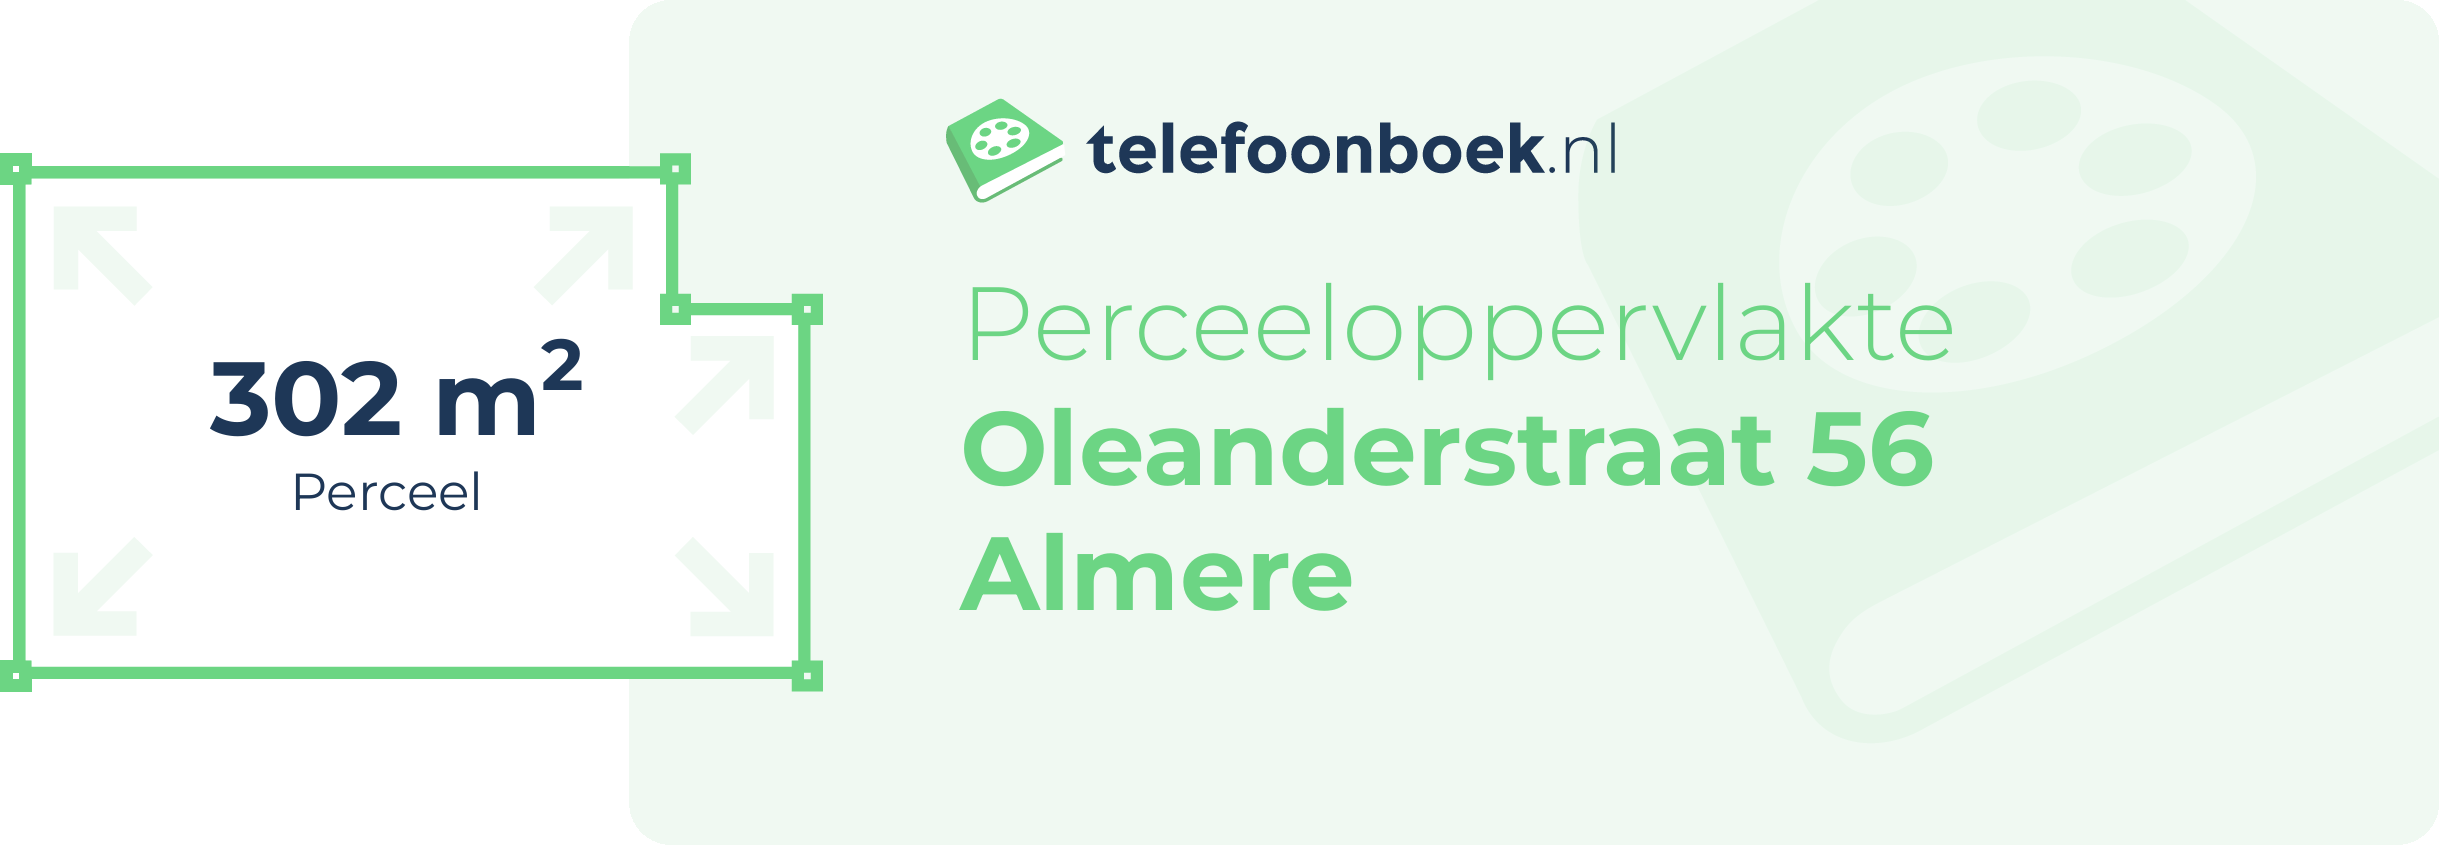 Perceeloppervlakte Oleanderstraat 56 Almere